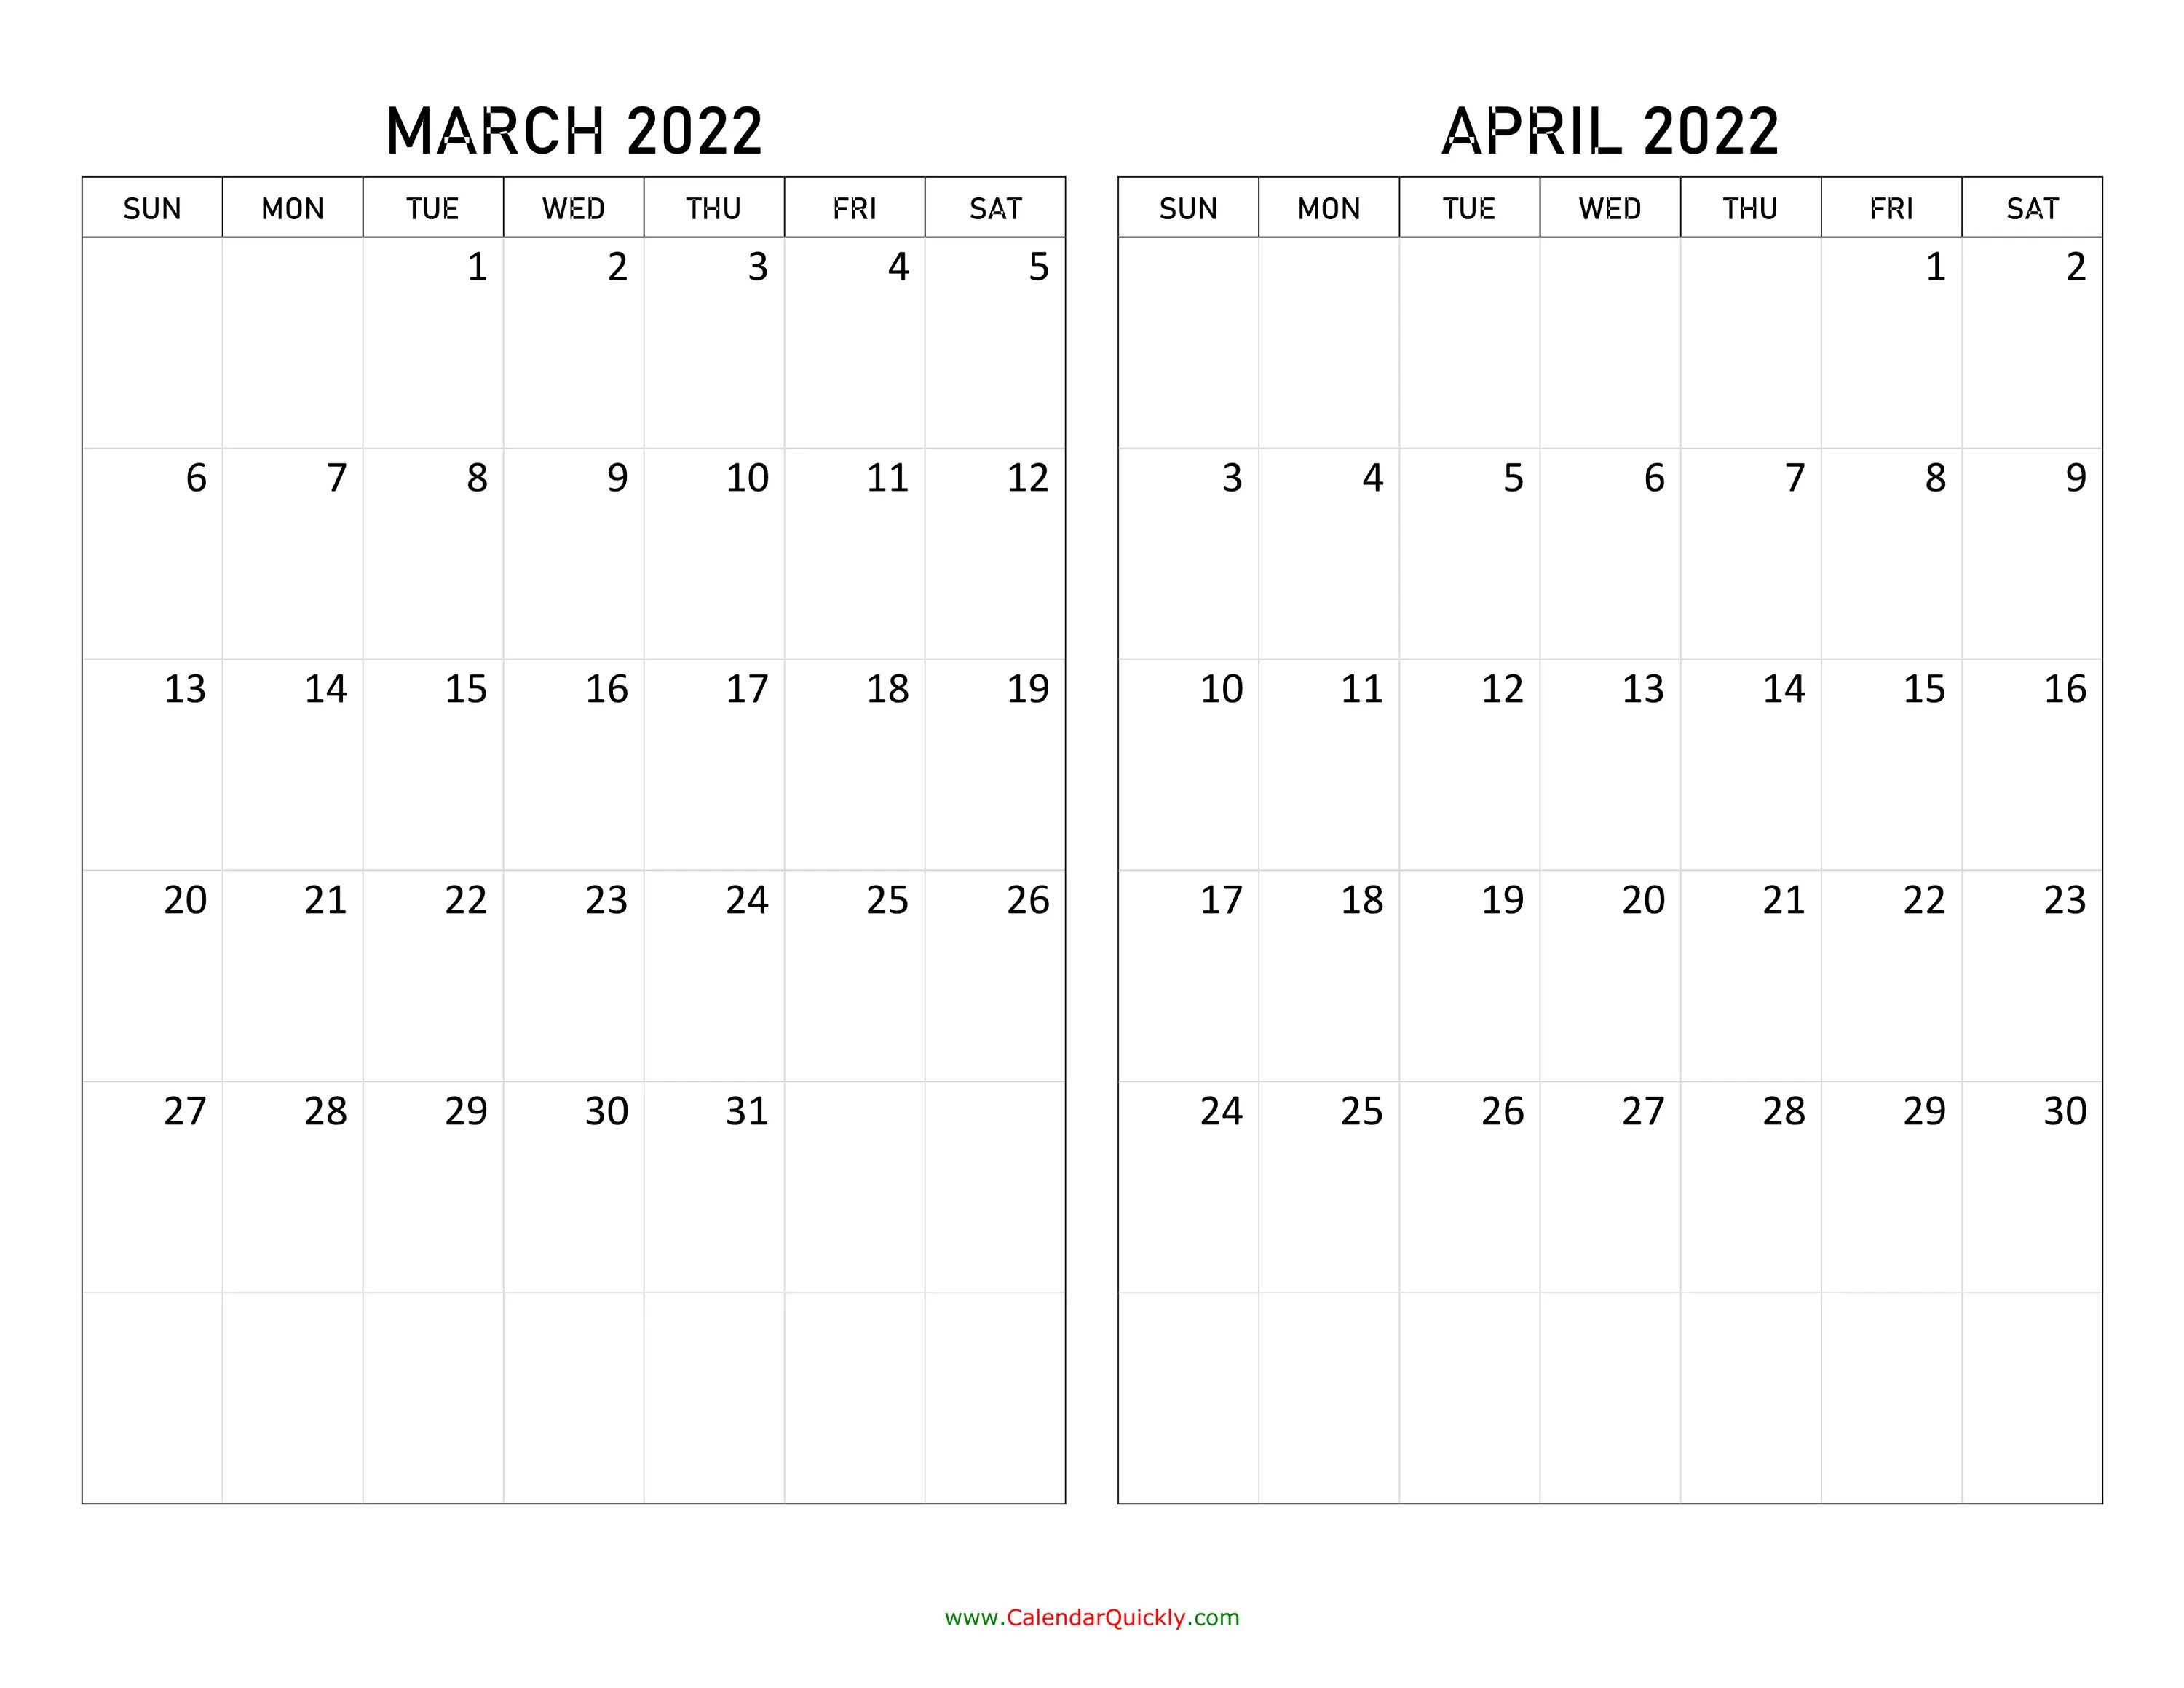 Календарь март апрель 2022. Календарь март 2022. Календарь на март 2022 года. Календарь на апрель 2022 года.